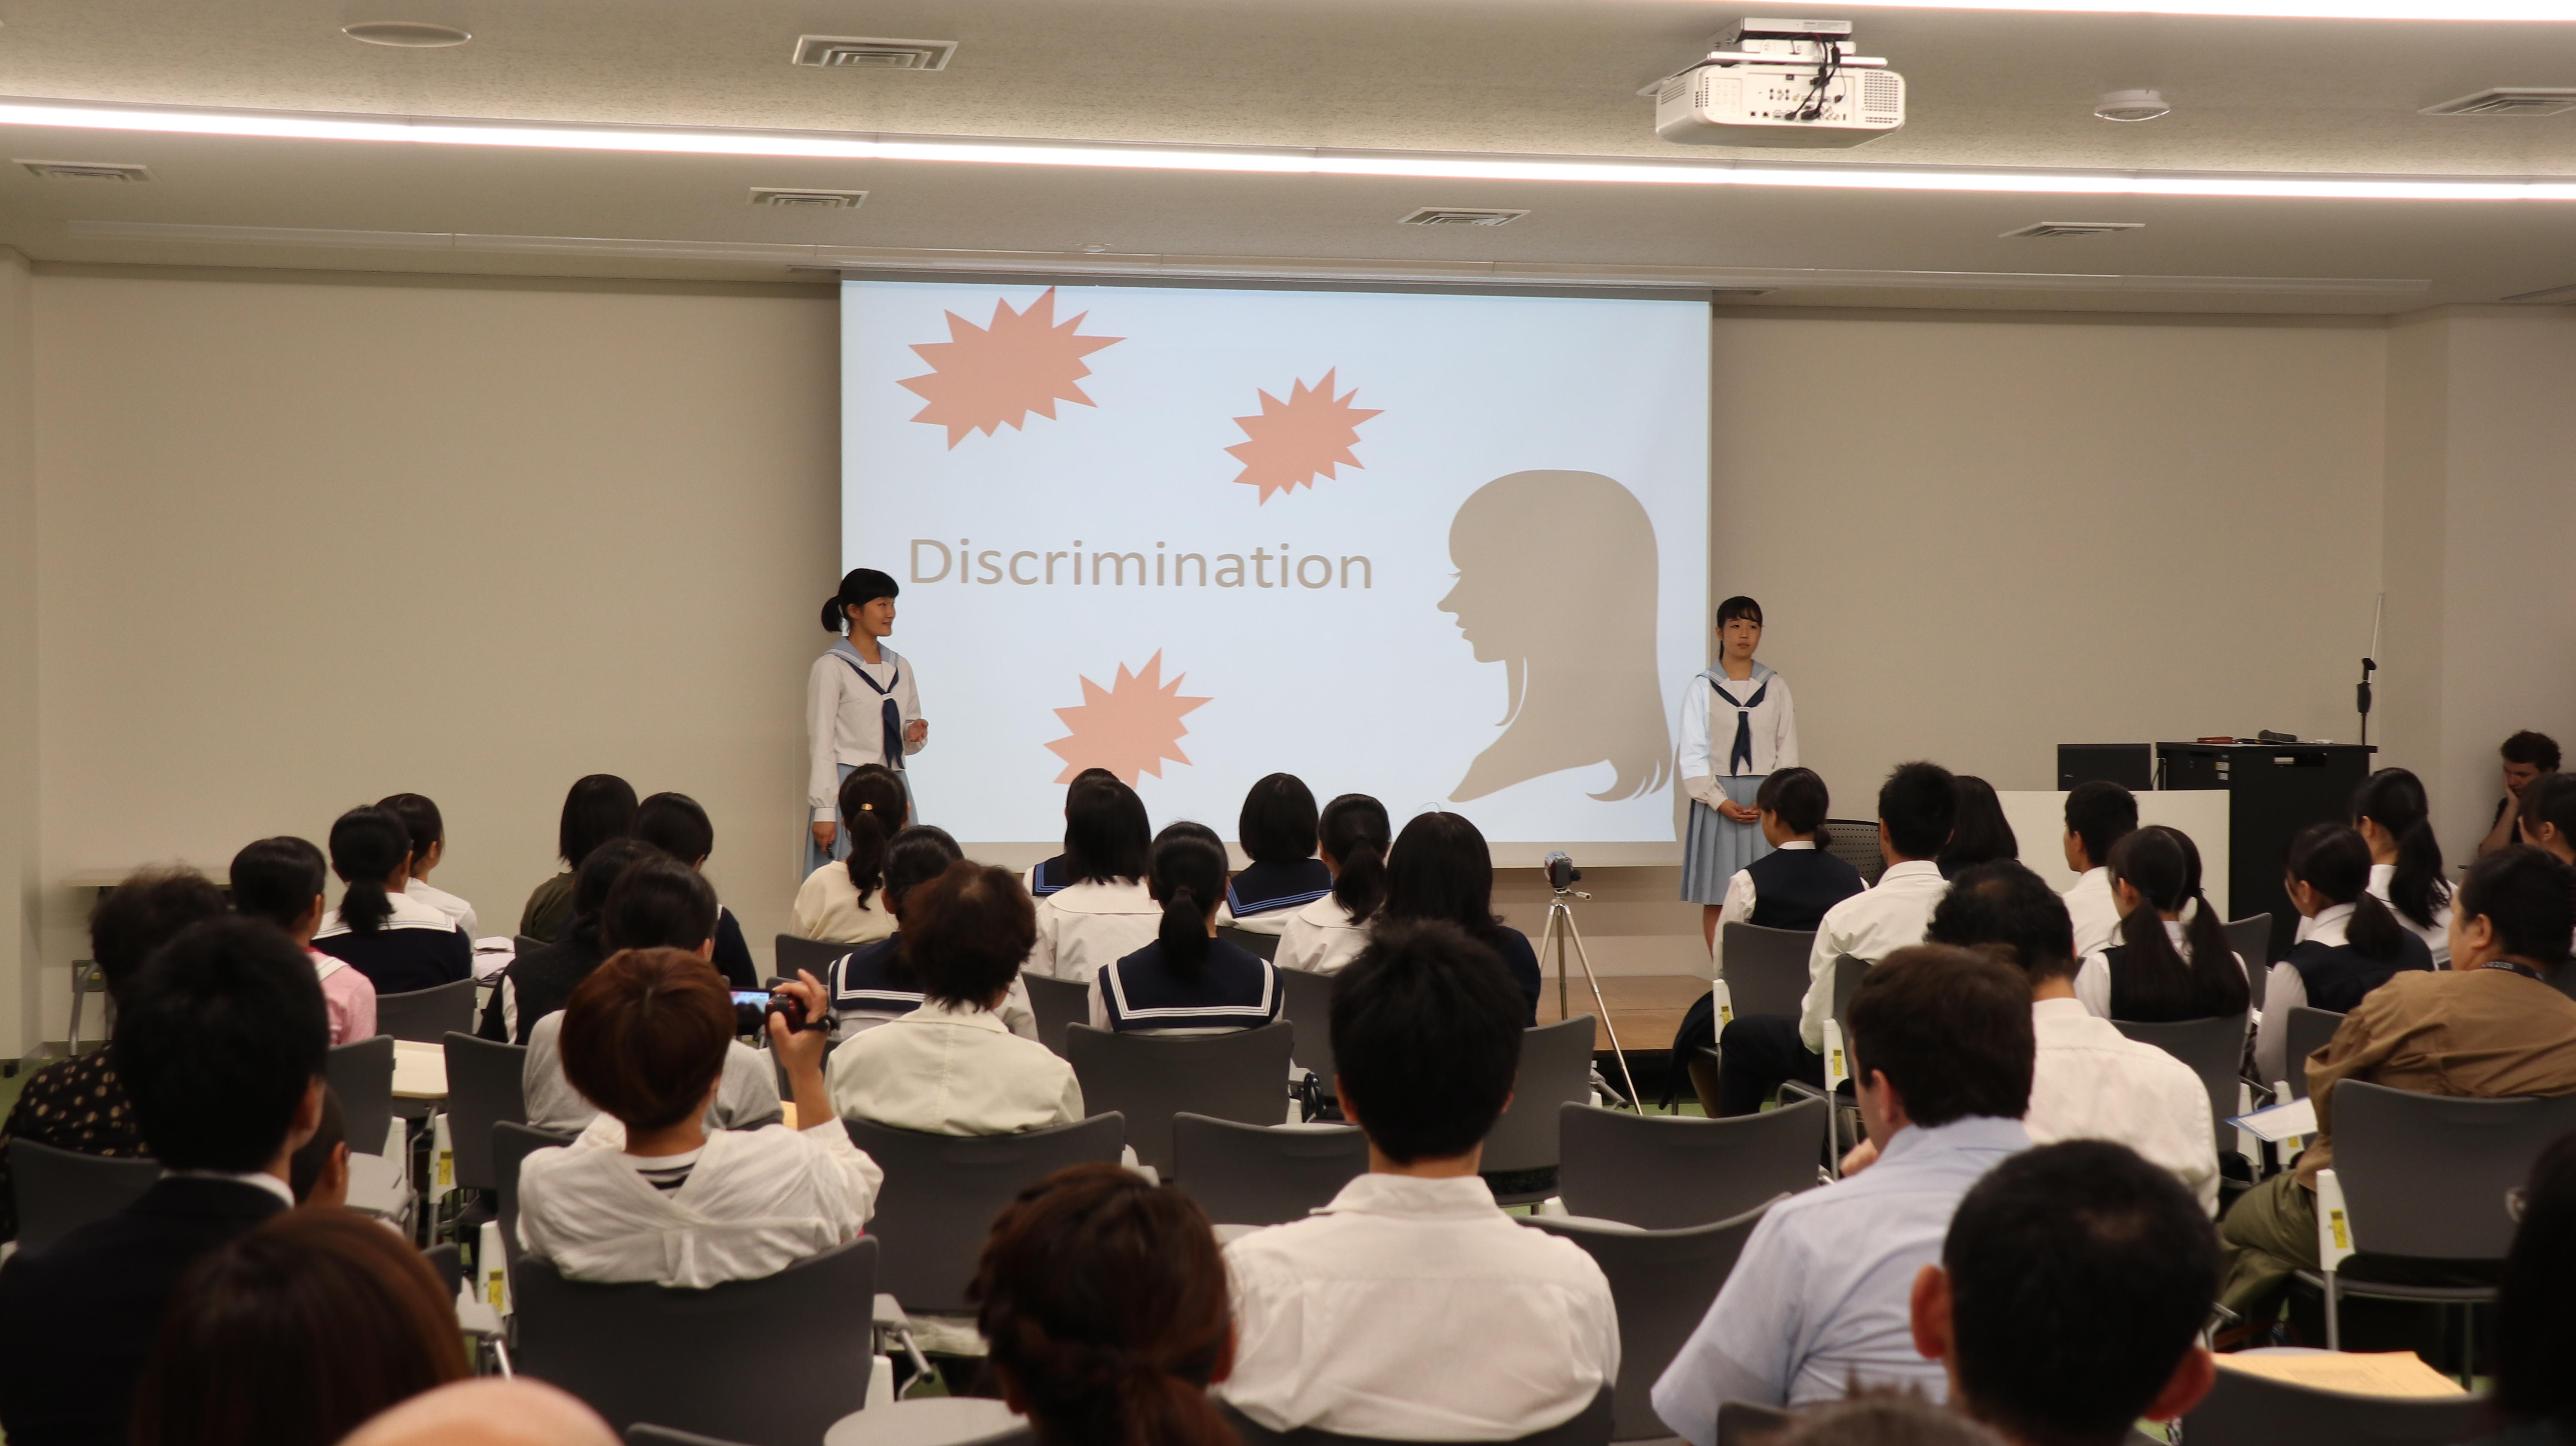 崇城大学が9月28日に「SOJO English Challenge 2019」を開催 -- 九州各地から16チームが参加、高校生が英語でプレゼン